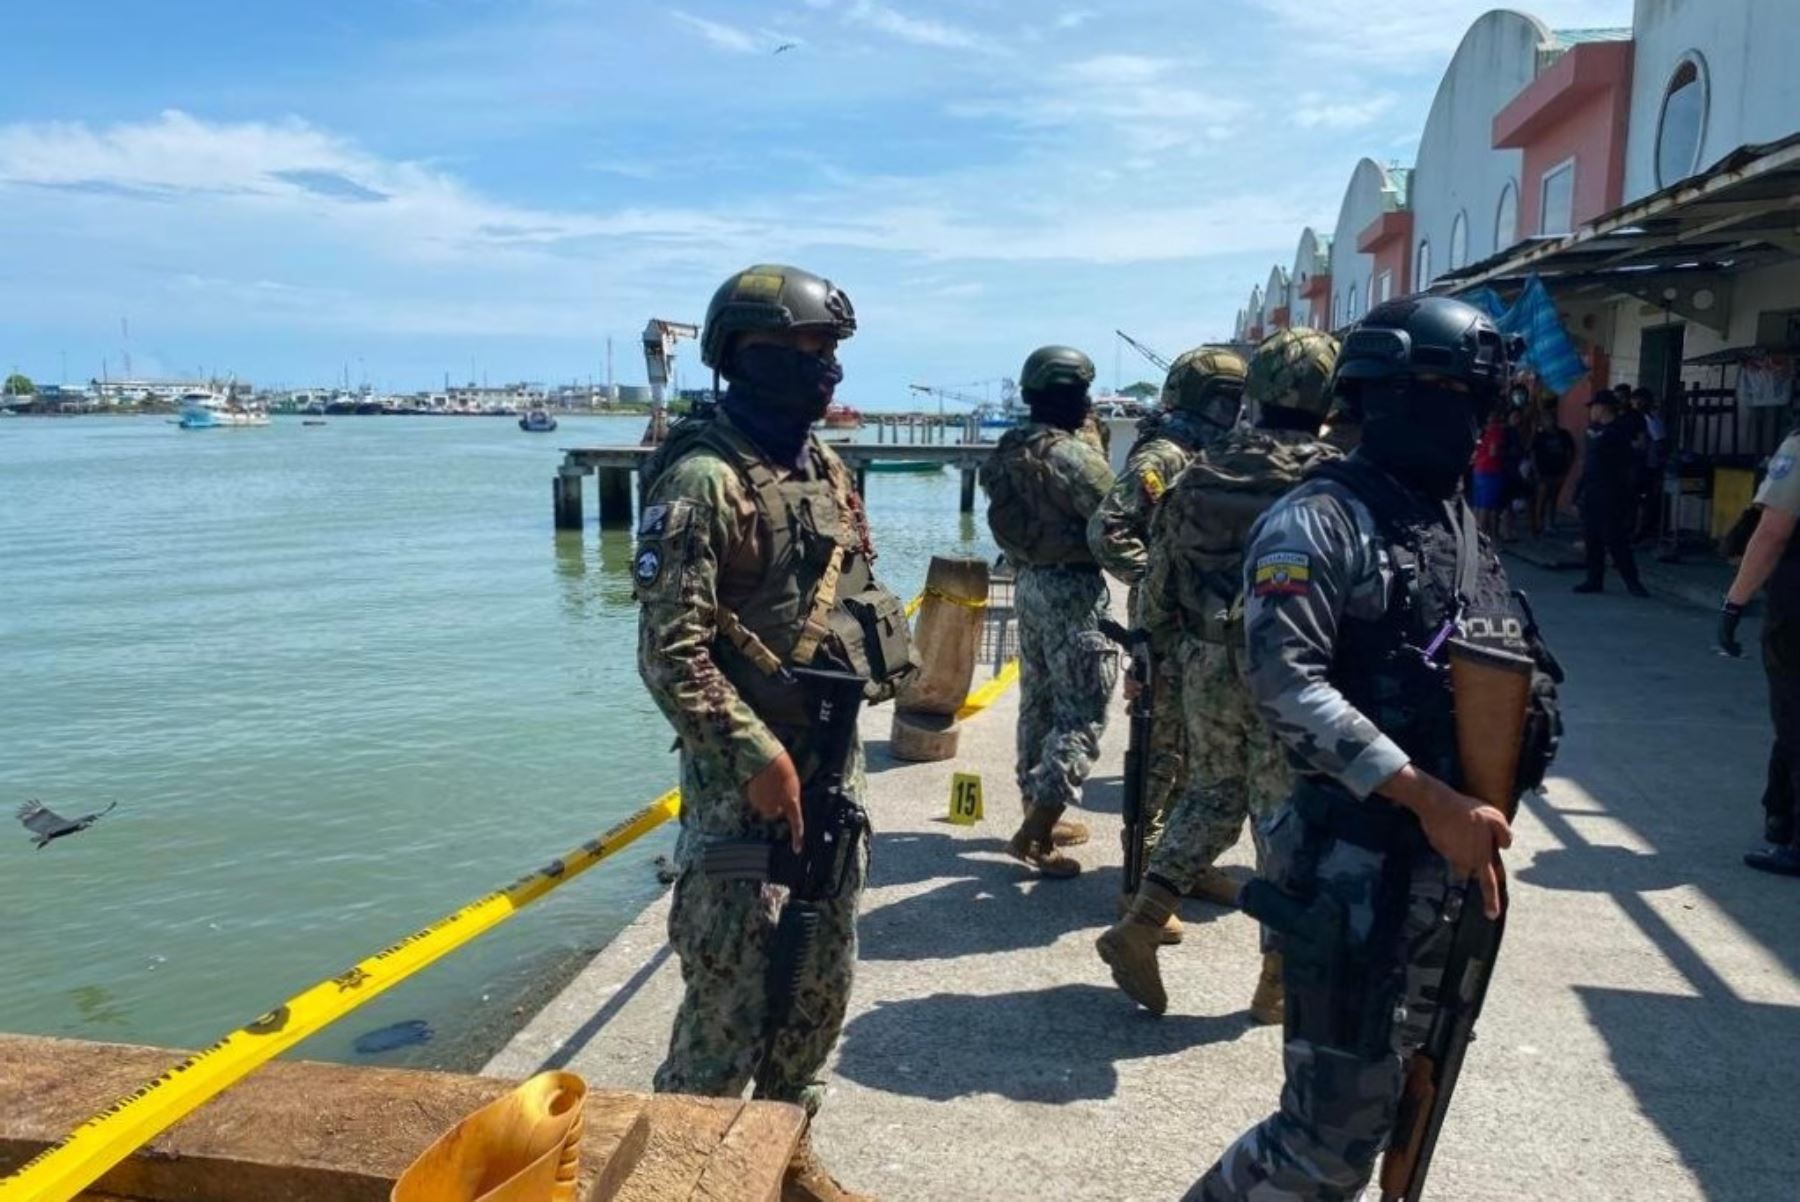 La Fiscalía de Ecuador investiga el crimen múltiple ocurriod este viernes 11 en el puerto de Esmeraldas. Foto: Fiscalía de Ecuador/Twitter.